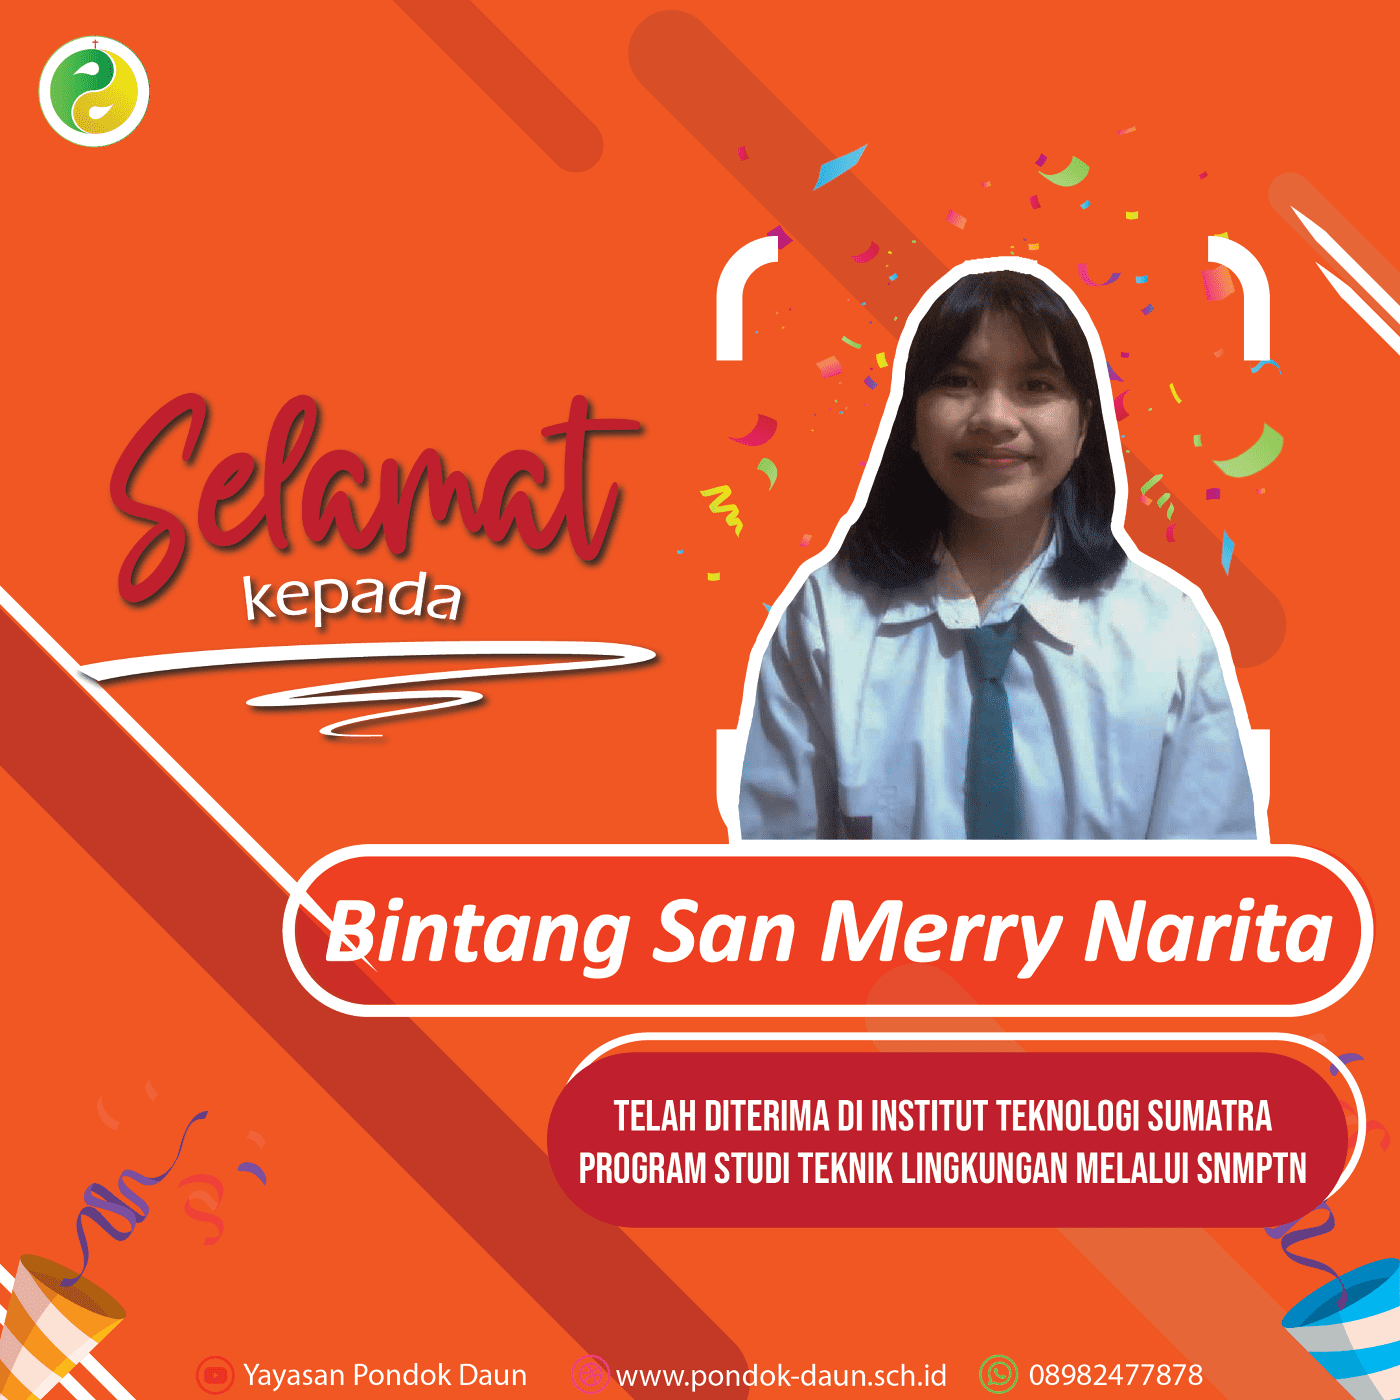 Bintang San Merry salah satu siswi SMA Pondok Daun diterima di Institut Teknologi Sumatra